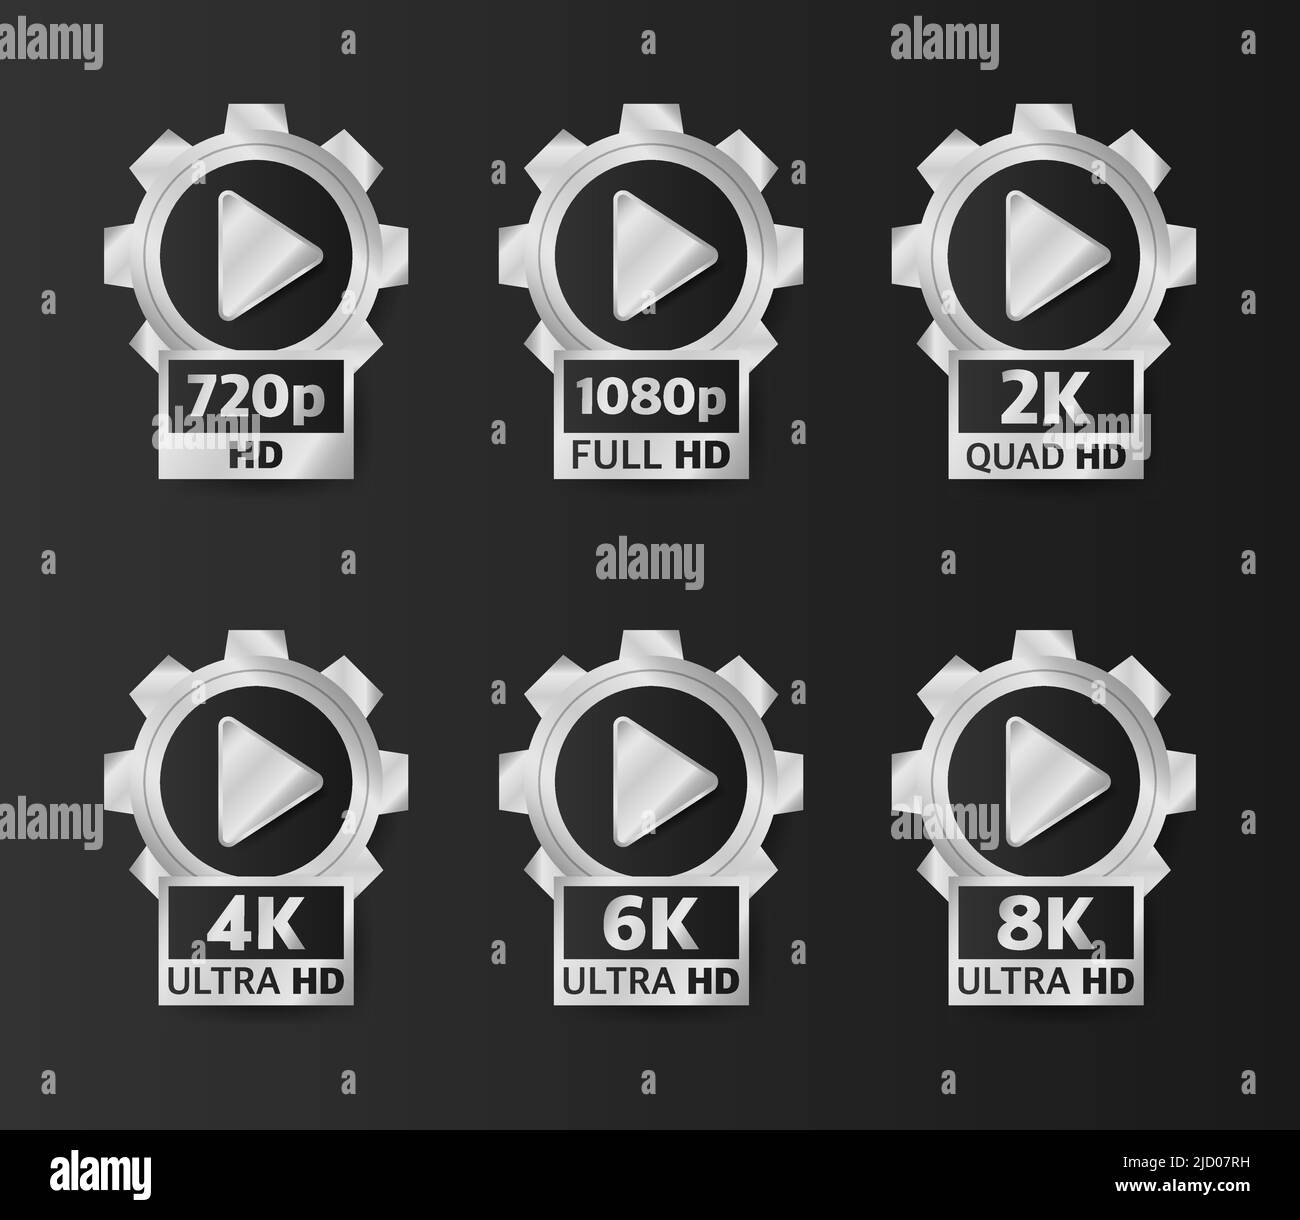 Badges de qualité vidéo de couleur argent sur fond noir. HD, Full HD, 2K, 4K, 6K et 8K. Illustration vectorielle. Illustration de Vecteur